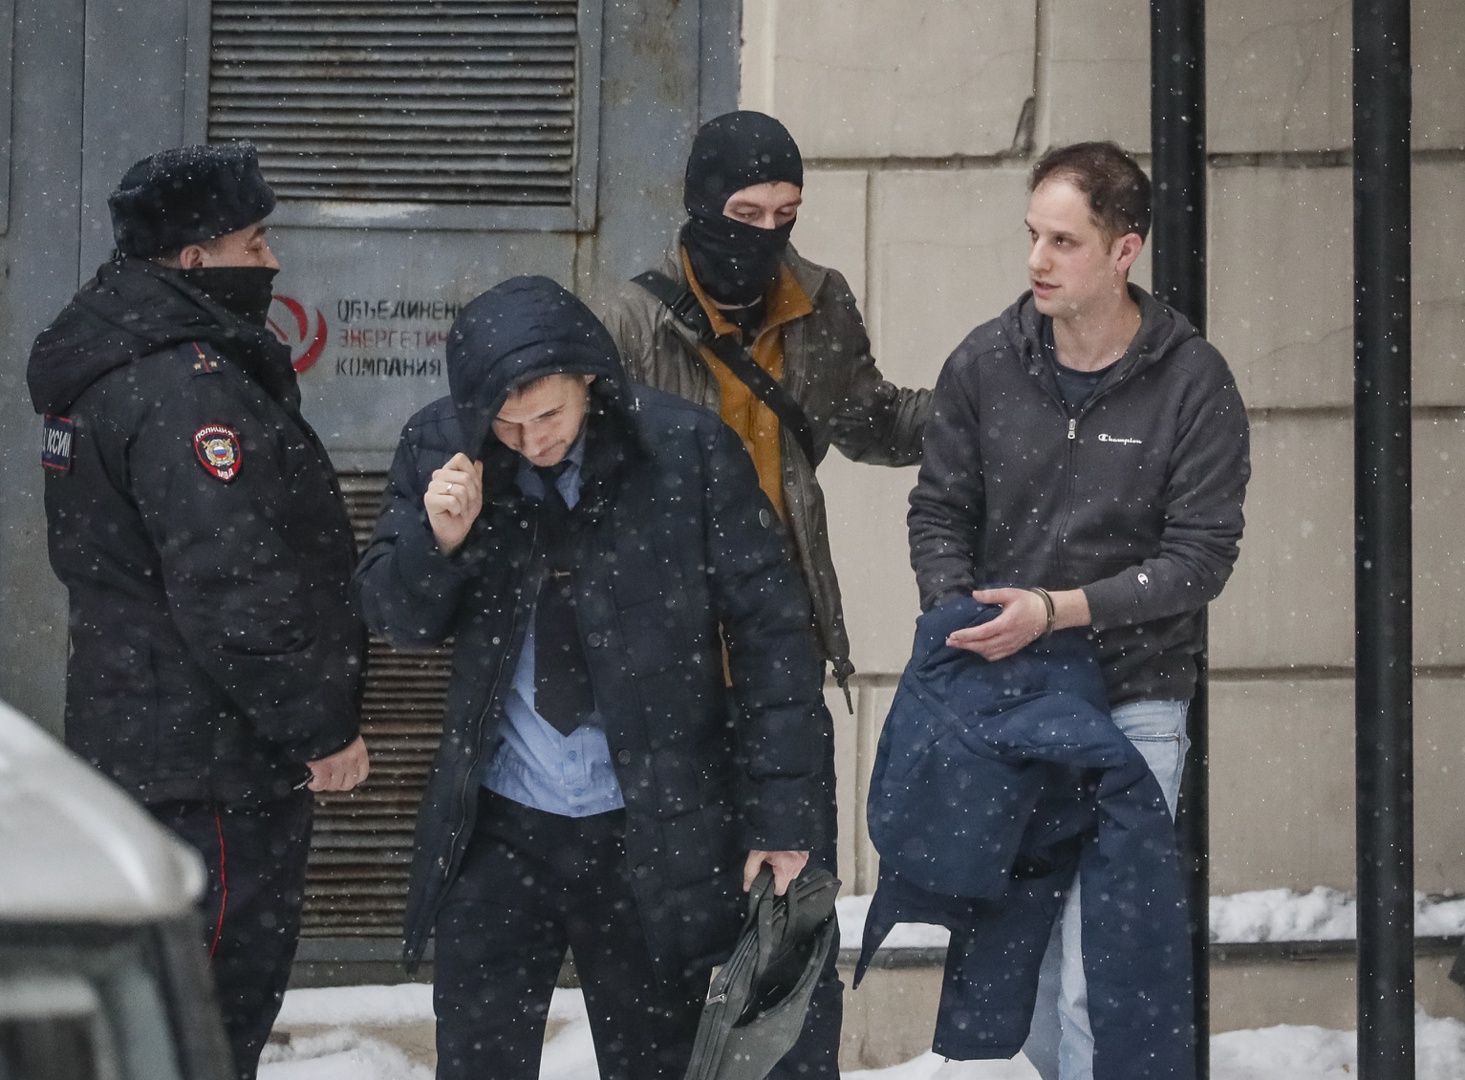 tribunal ruso prolonga hasta finales de marzo el arresto del periodista de eeuu evan gershkovich